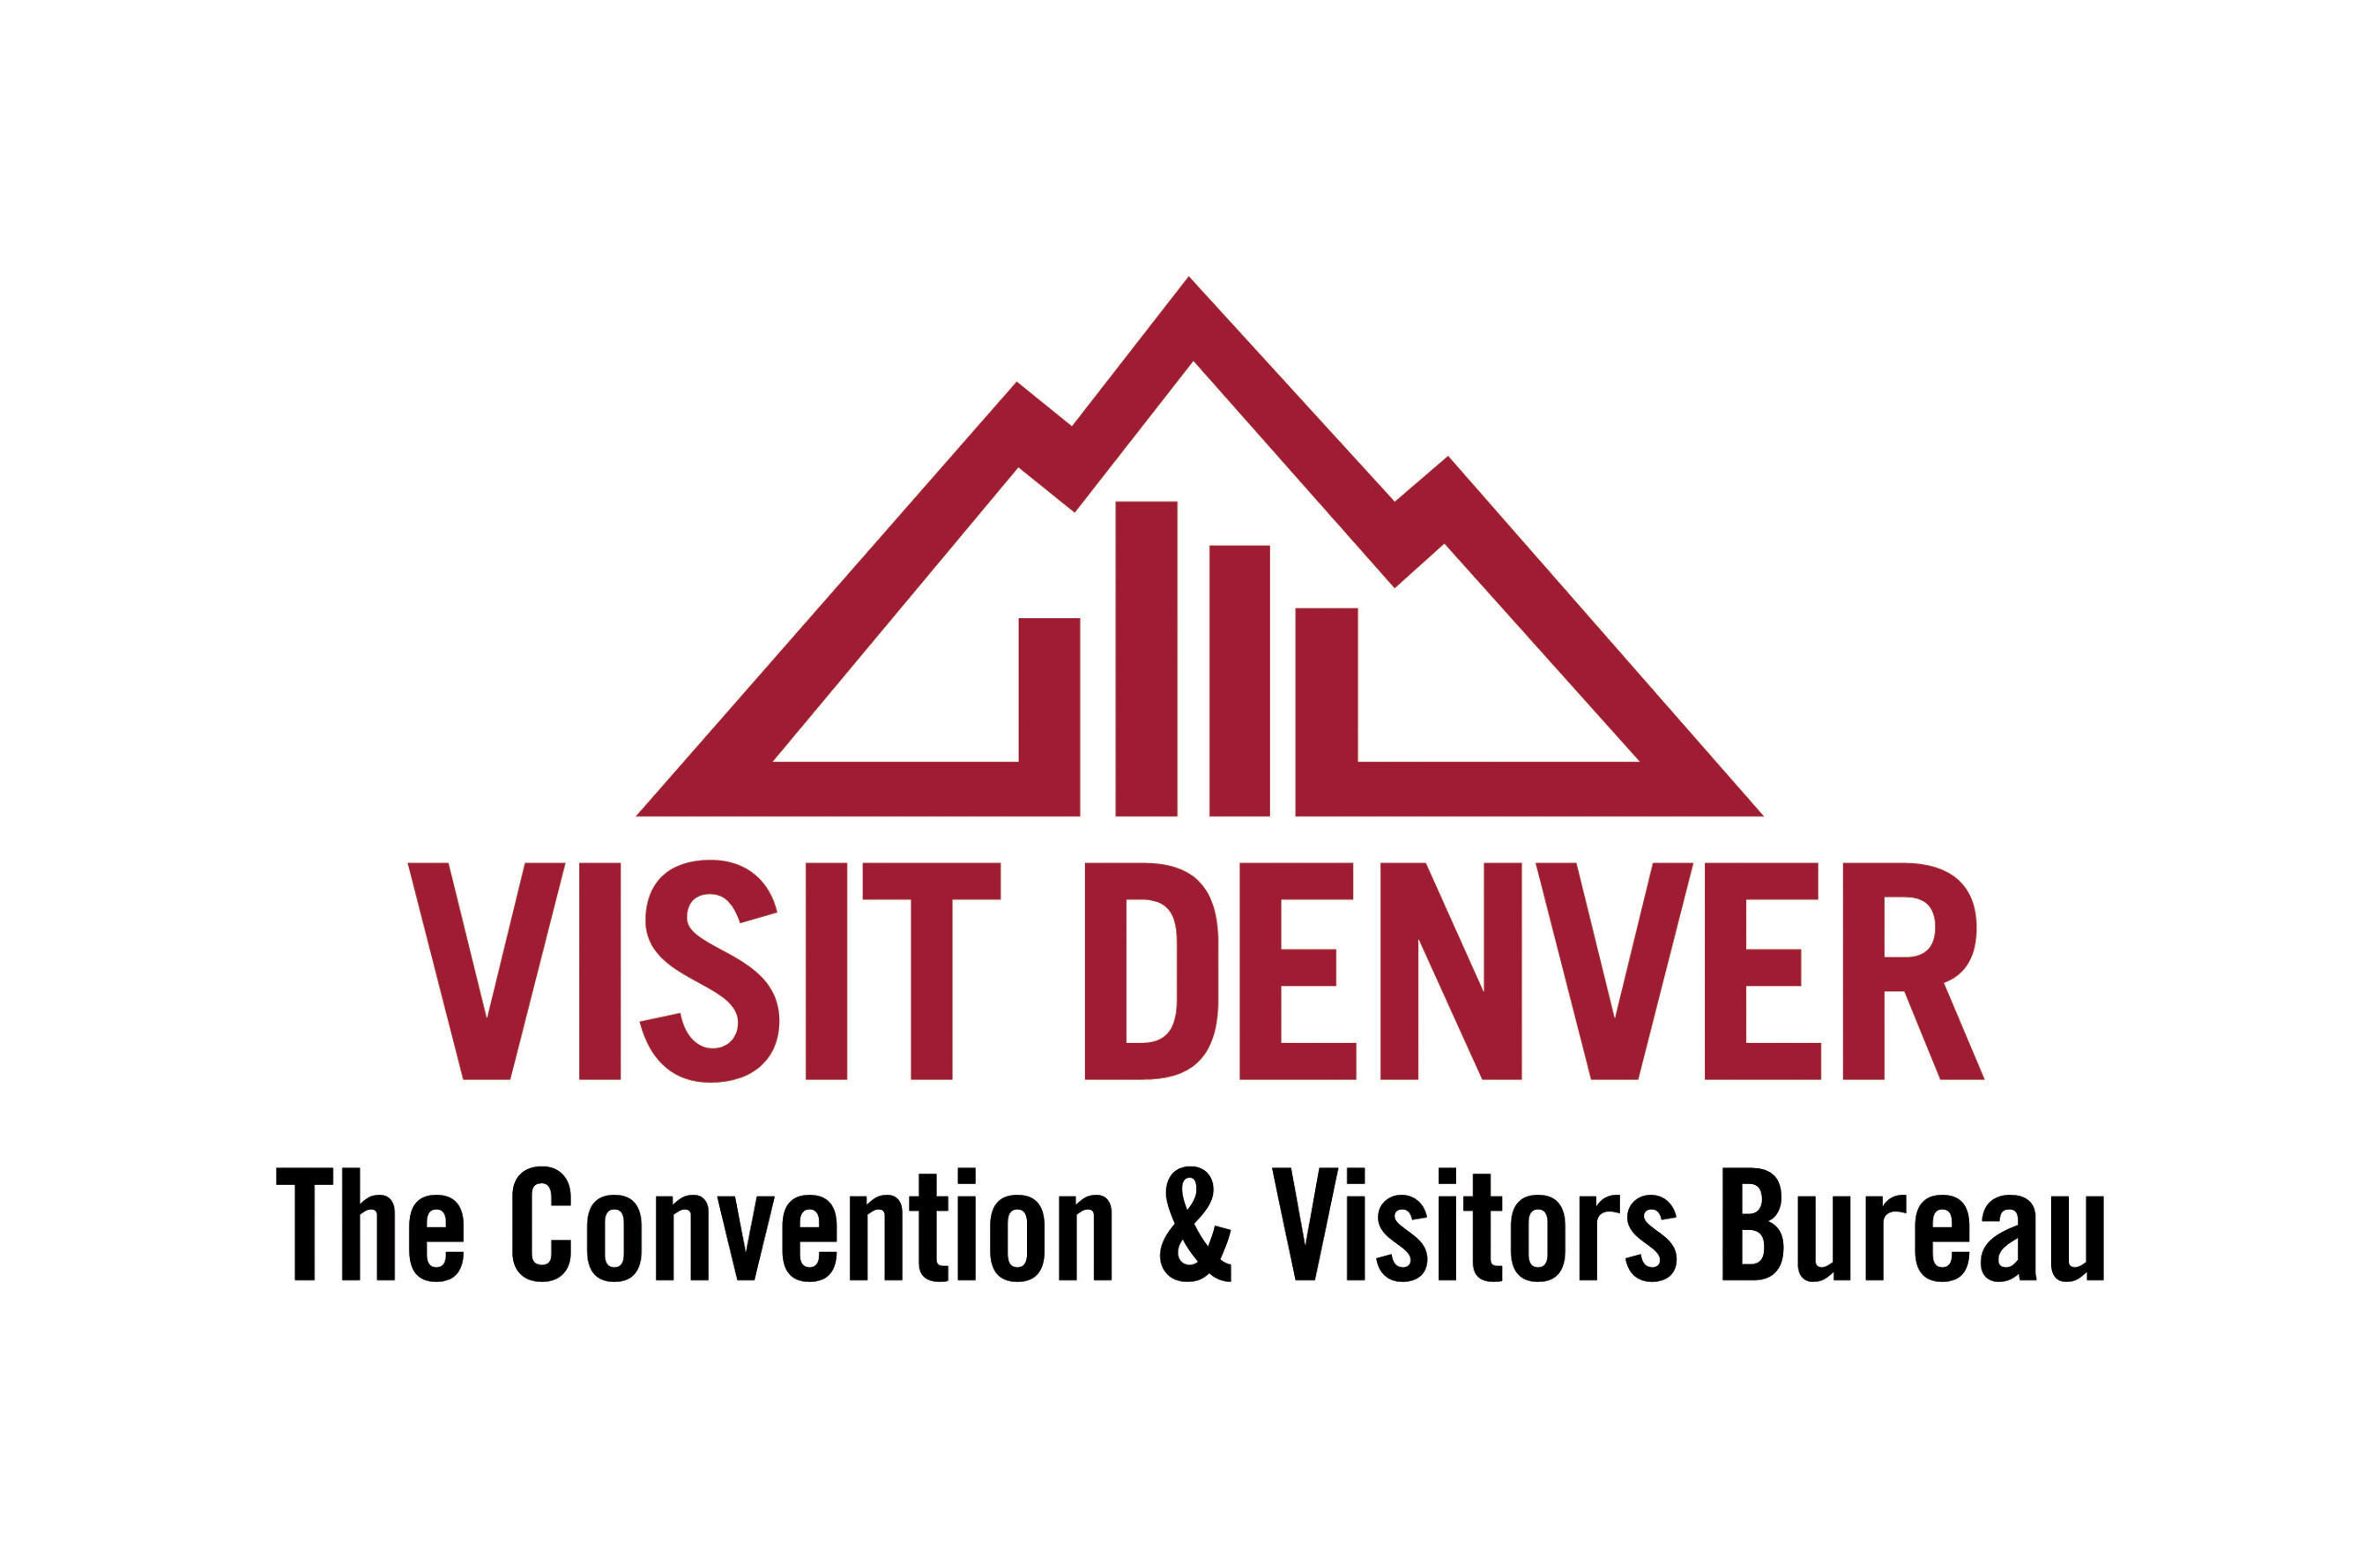 VISIT DENVER, The Convention & Visitors Bureau logo. (PRNewsFoto/VISIT DENVER, The Convention & Visitors Bureau) (PRNewsFoto/)